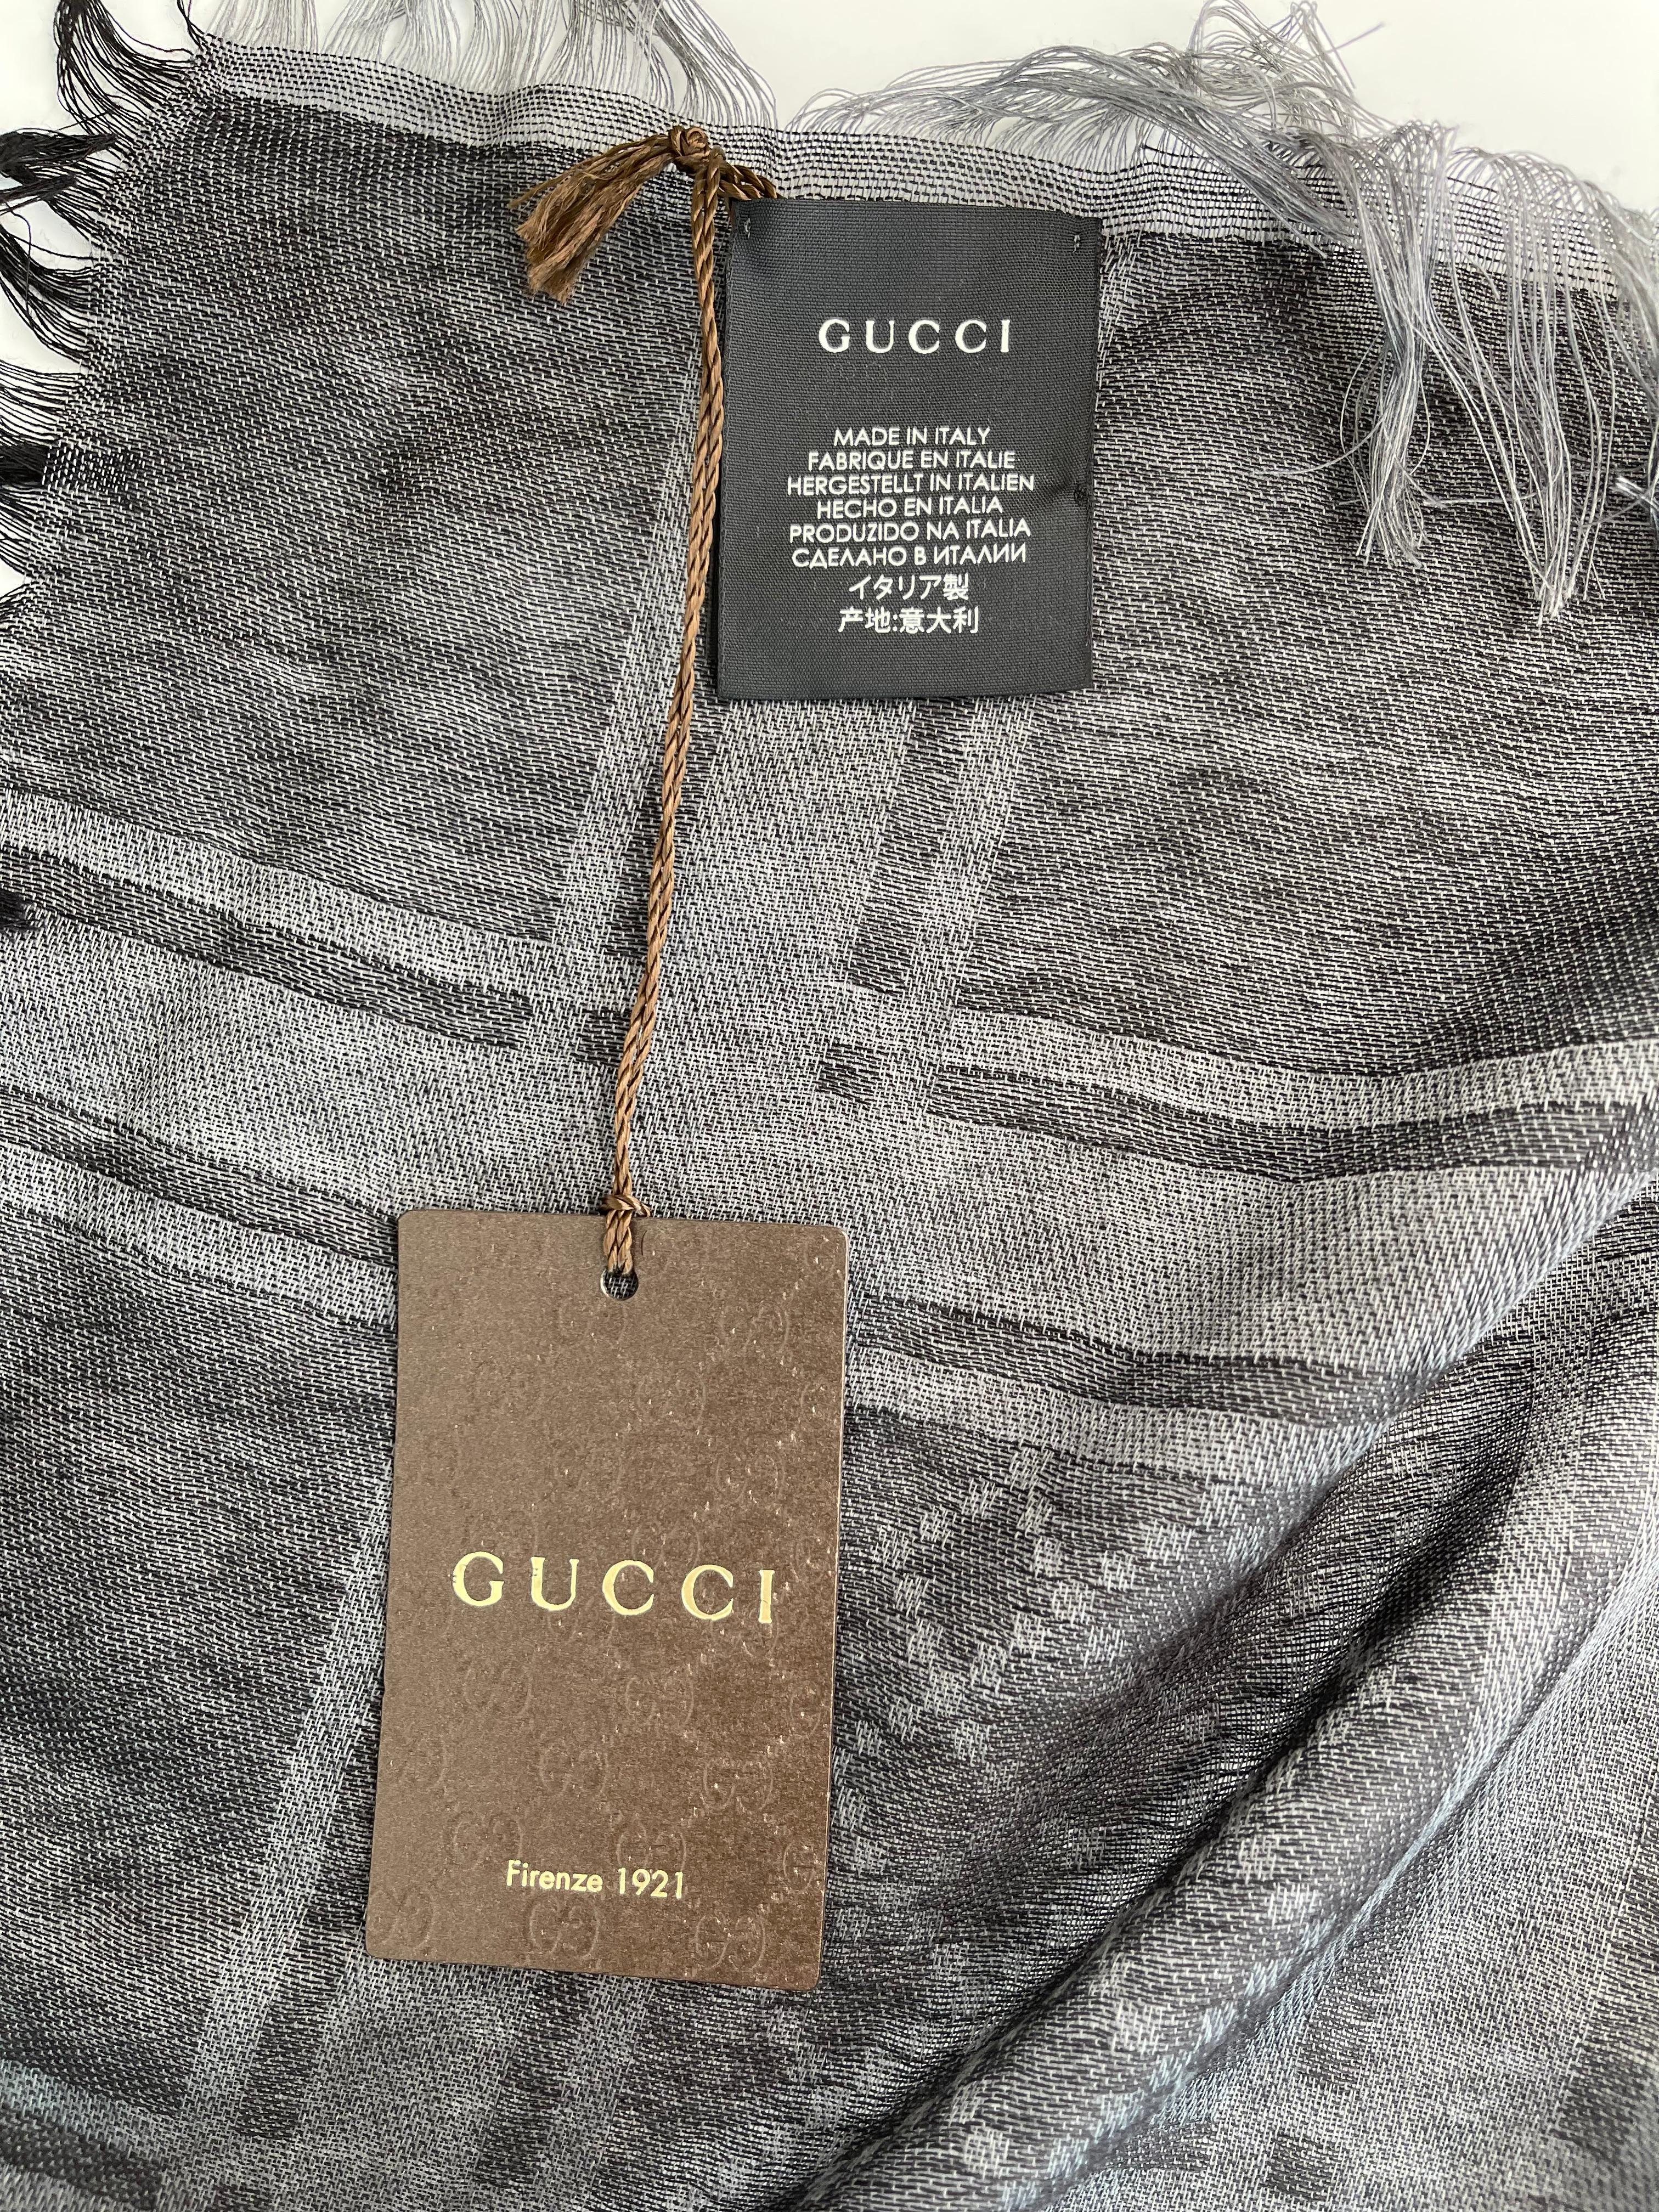 Women's or Men's  Gucci GG Guccissima Black and Grey Survive Silk Scarf Shawl Wrap (544615)